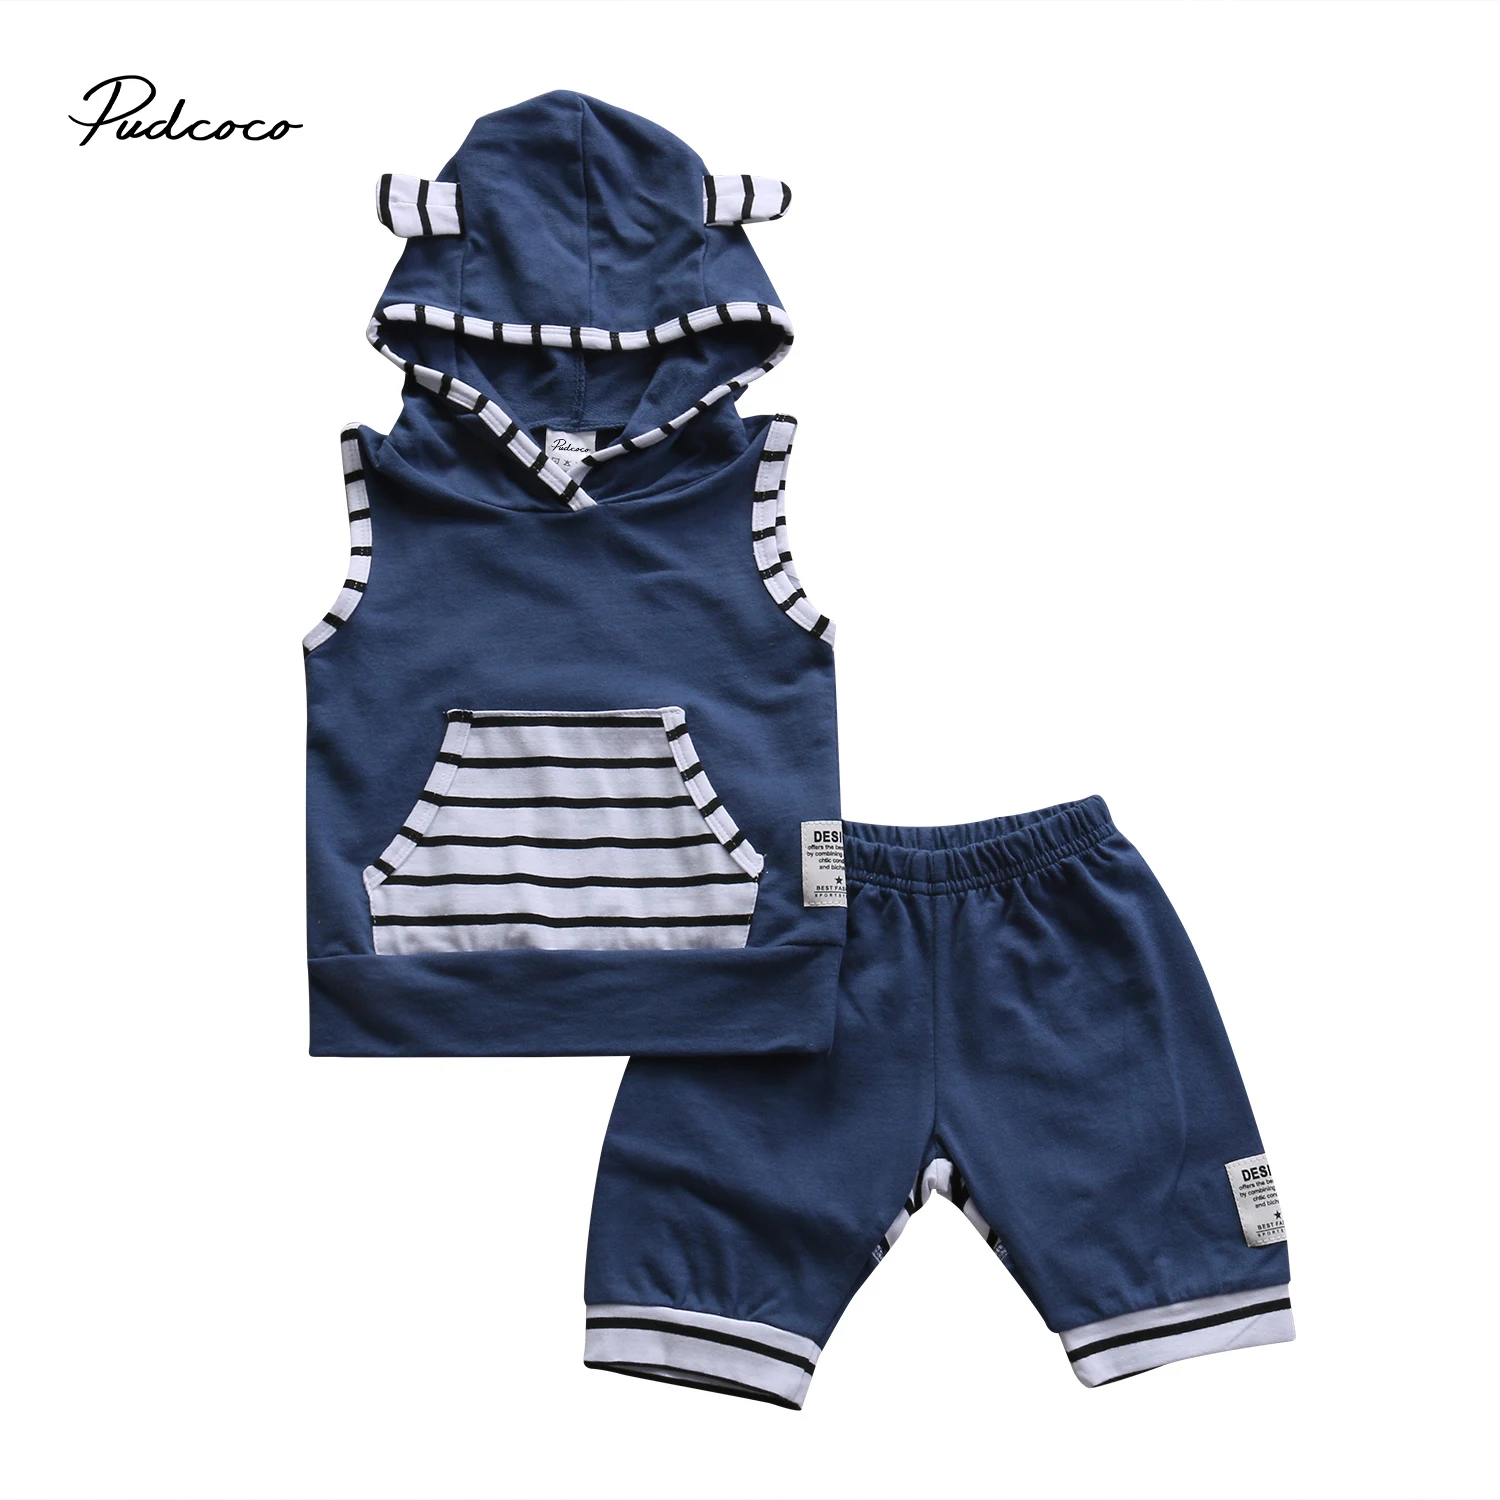 Pudcoco/комплект одежды из 2 предметов для маленьких мальчиков и девочек хлопковый комплект одежды без рукавов в полоску с капюшоном+ штаны для детей от 0 до 3 лет, Helen115 - Цвет: Синий